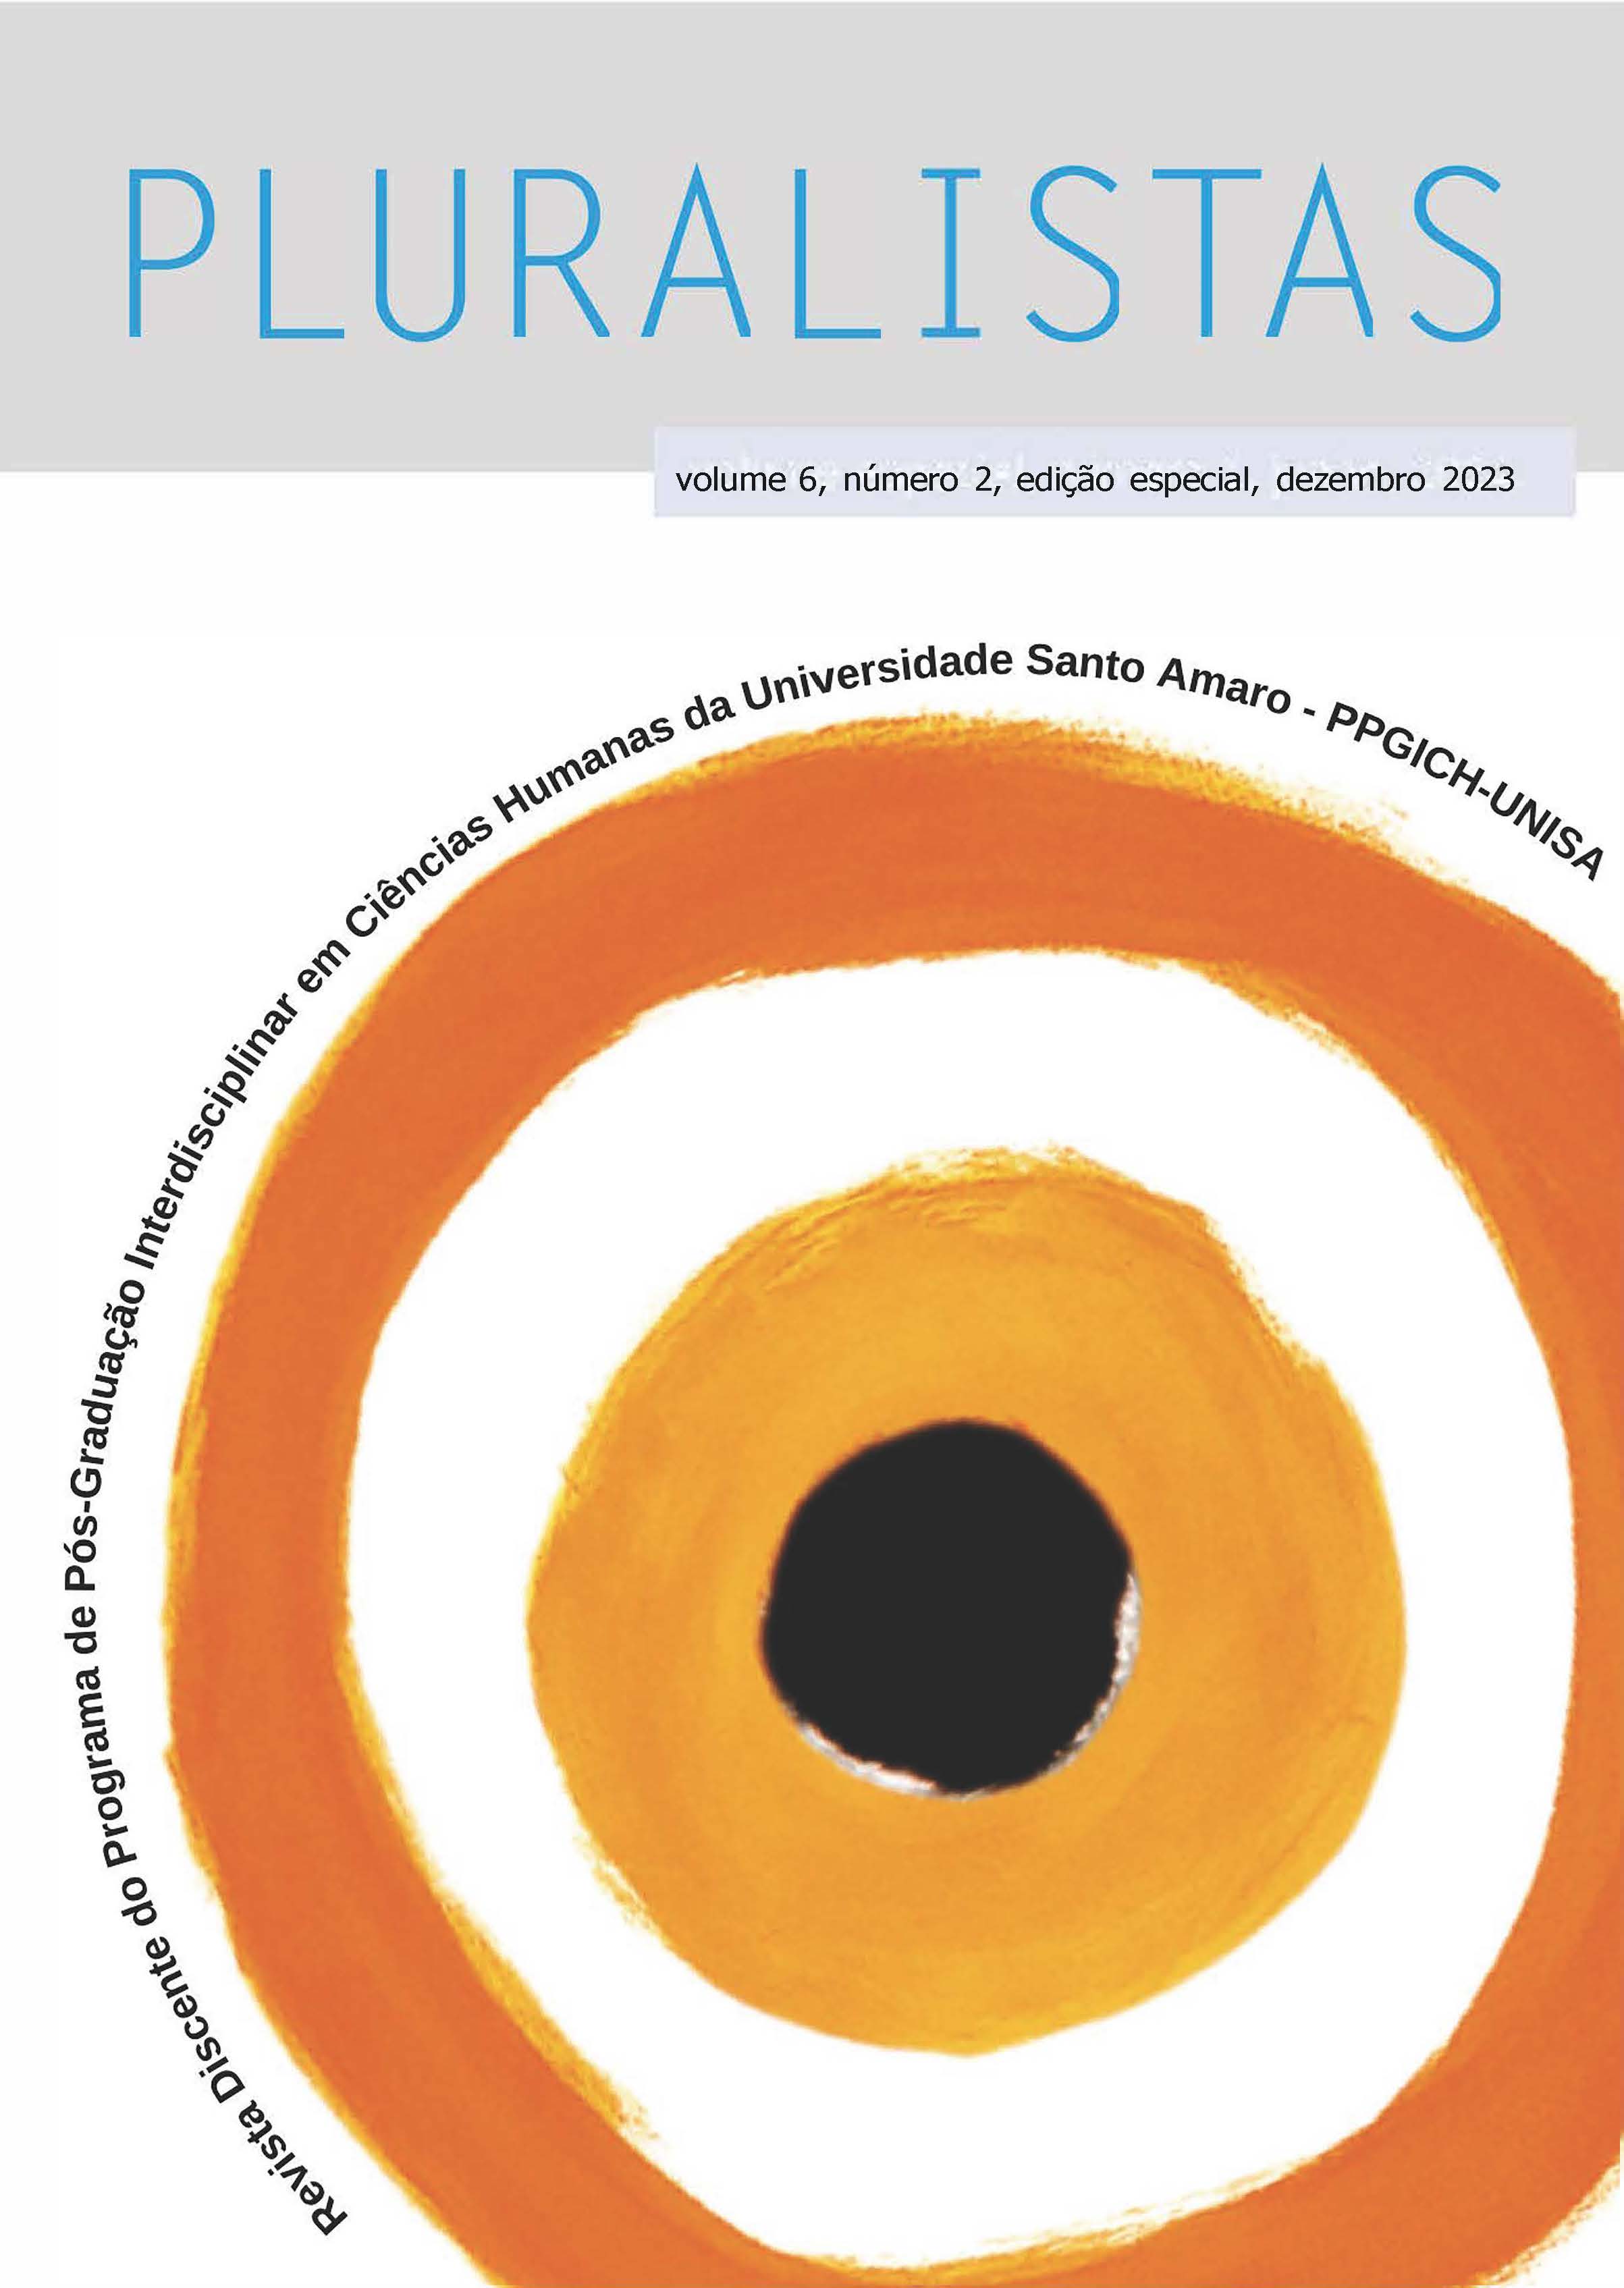 					Visualizar v. 6 n. 2 (edição especial) (2023): Revista Pluralistas - Revista Discente do Programa de Pós-Graduação Interdisciplinar em Ciências Humanas da Universidade Santo Amaro – PPGICH-UNISA
				